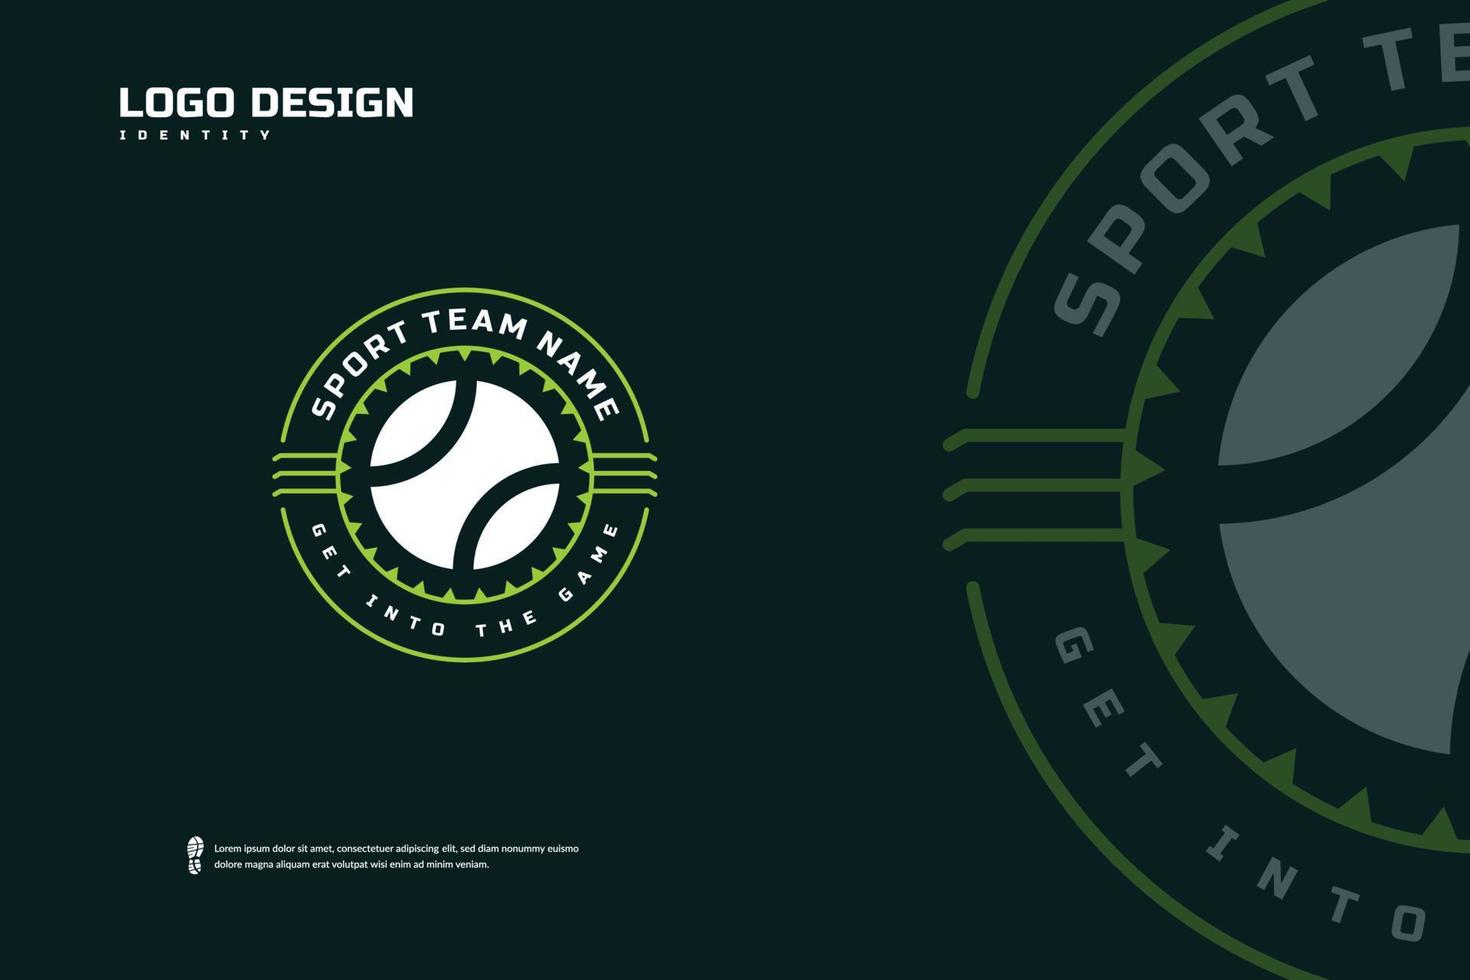 logotipo de la insignia de tenis, identidad del equipo deportivo. plantilla de diseño de torneo de tenis, ilustración de vector de insignia de e-sport